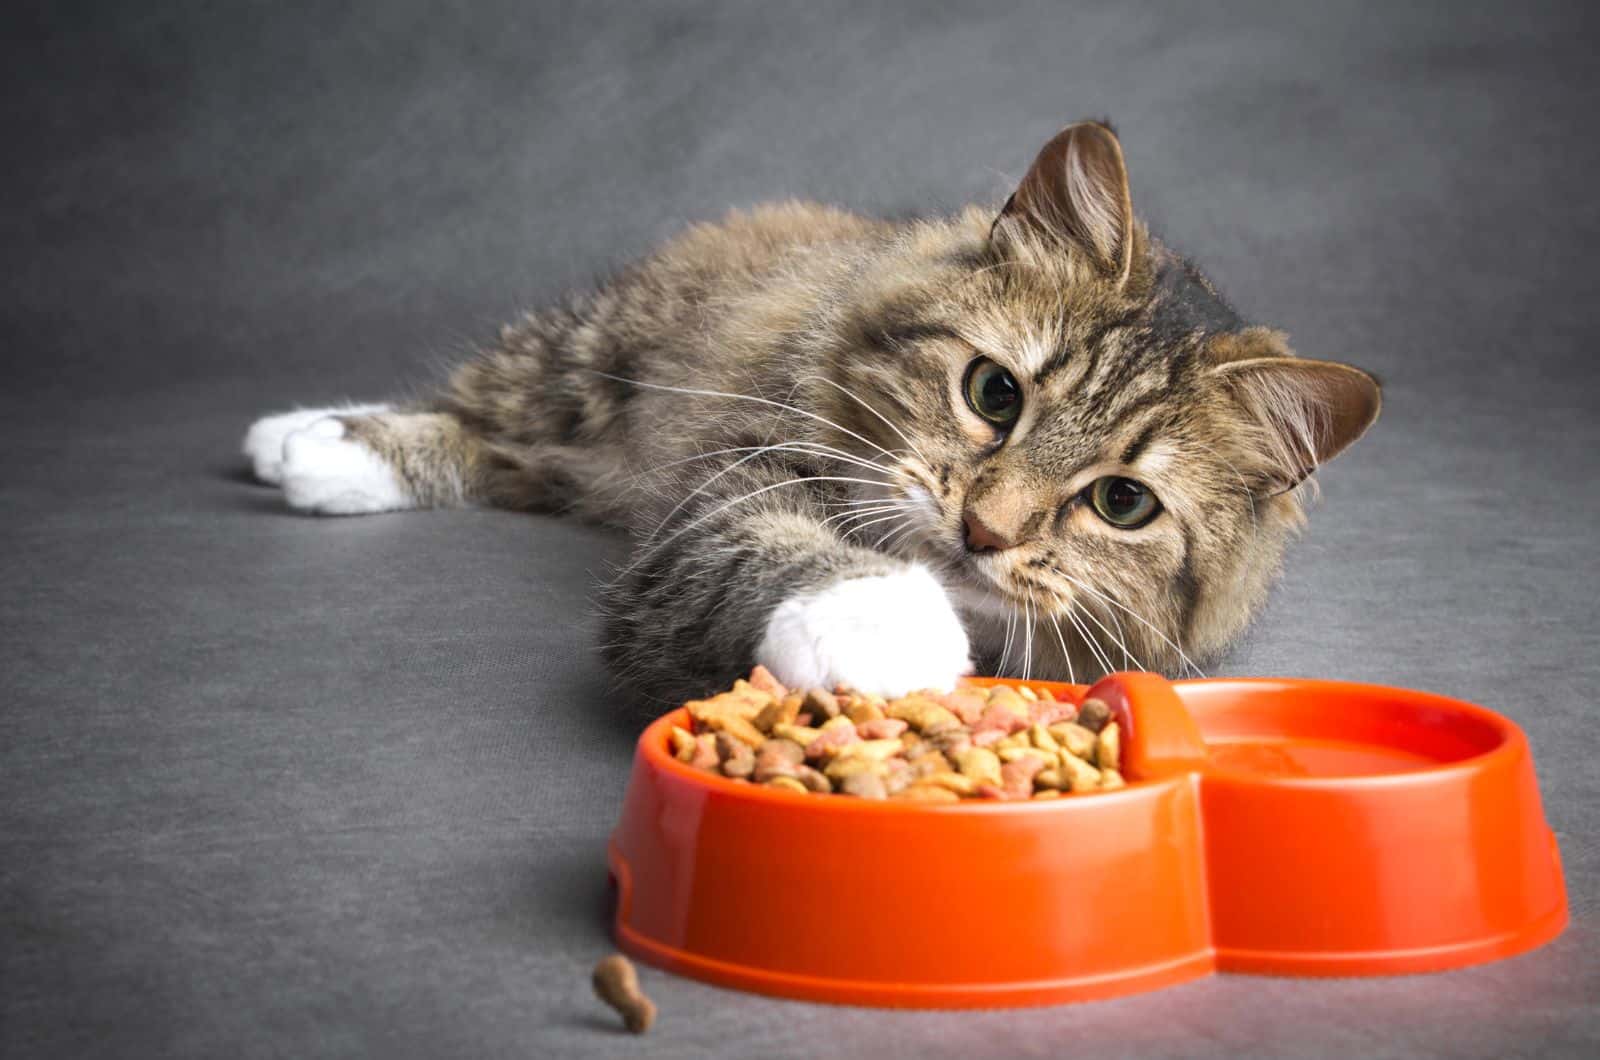 kitten eating foor from orange bowl